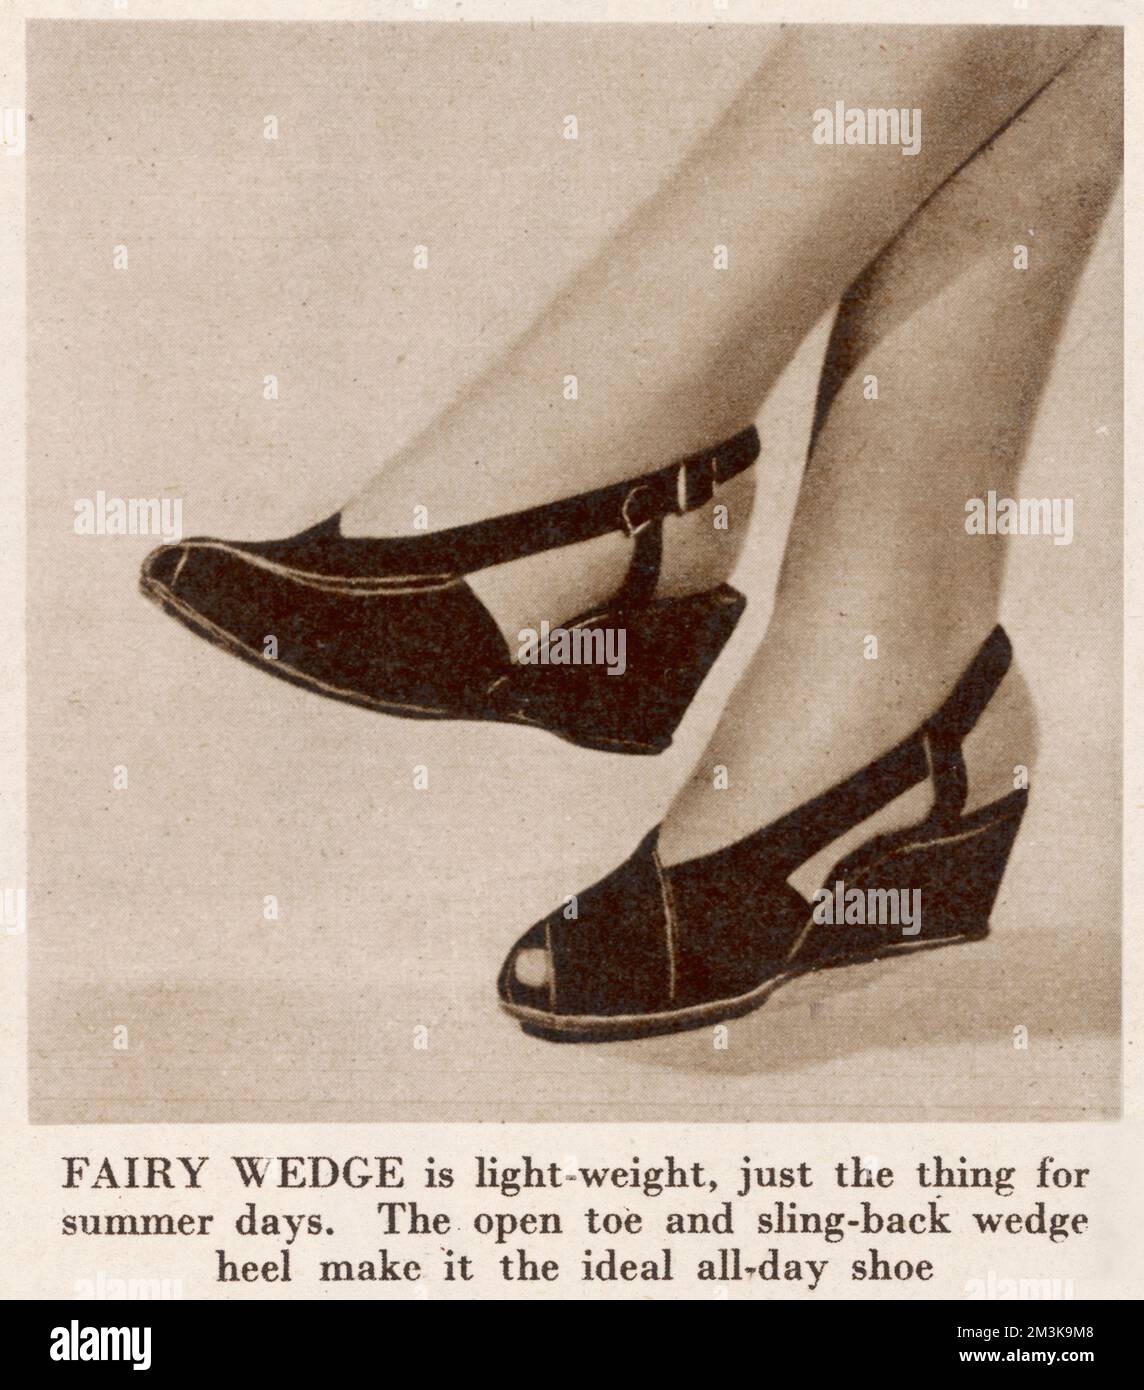 In einer Funktion mit dem Titel „Best foot forward“ (Bester Fuß nach vorn) werden wir den Fairy Wedge, den offenen Zehenschuh und den Sling Back Schuh vorstellen, genau das Richtige für Sommertage. Datum: 1946 Stockfoto